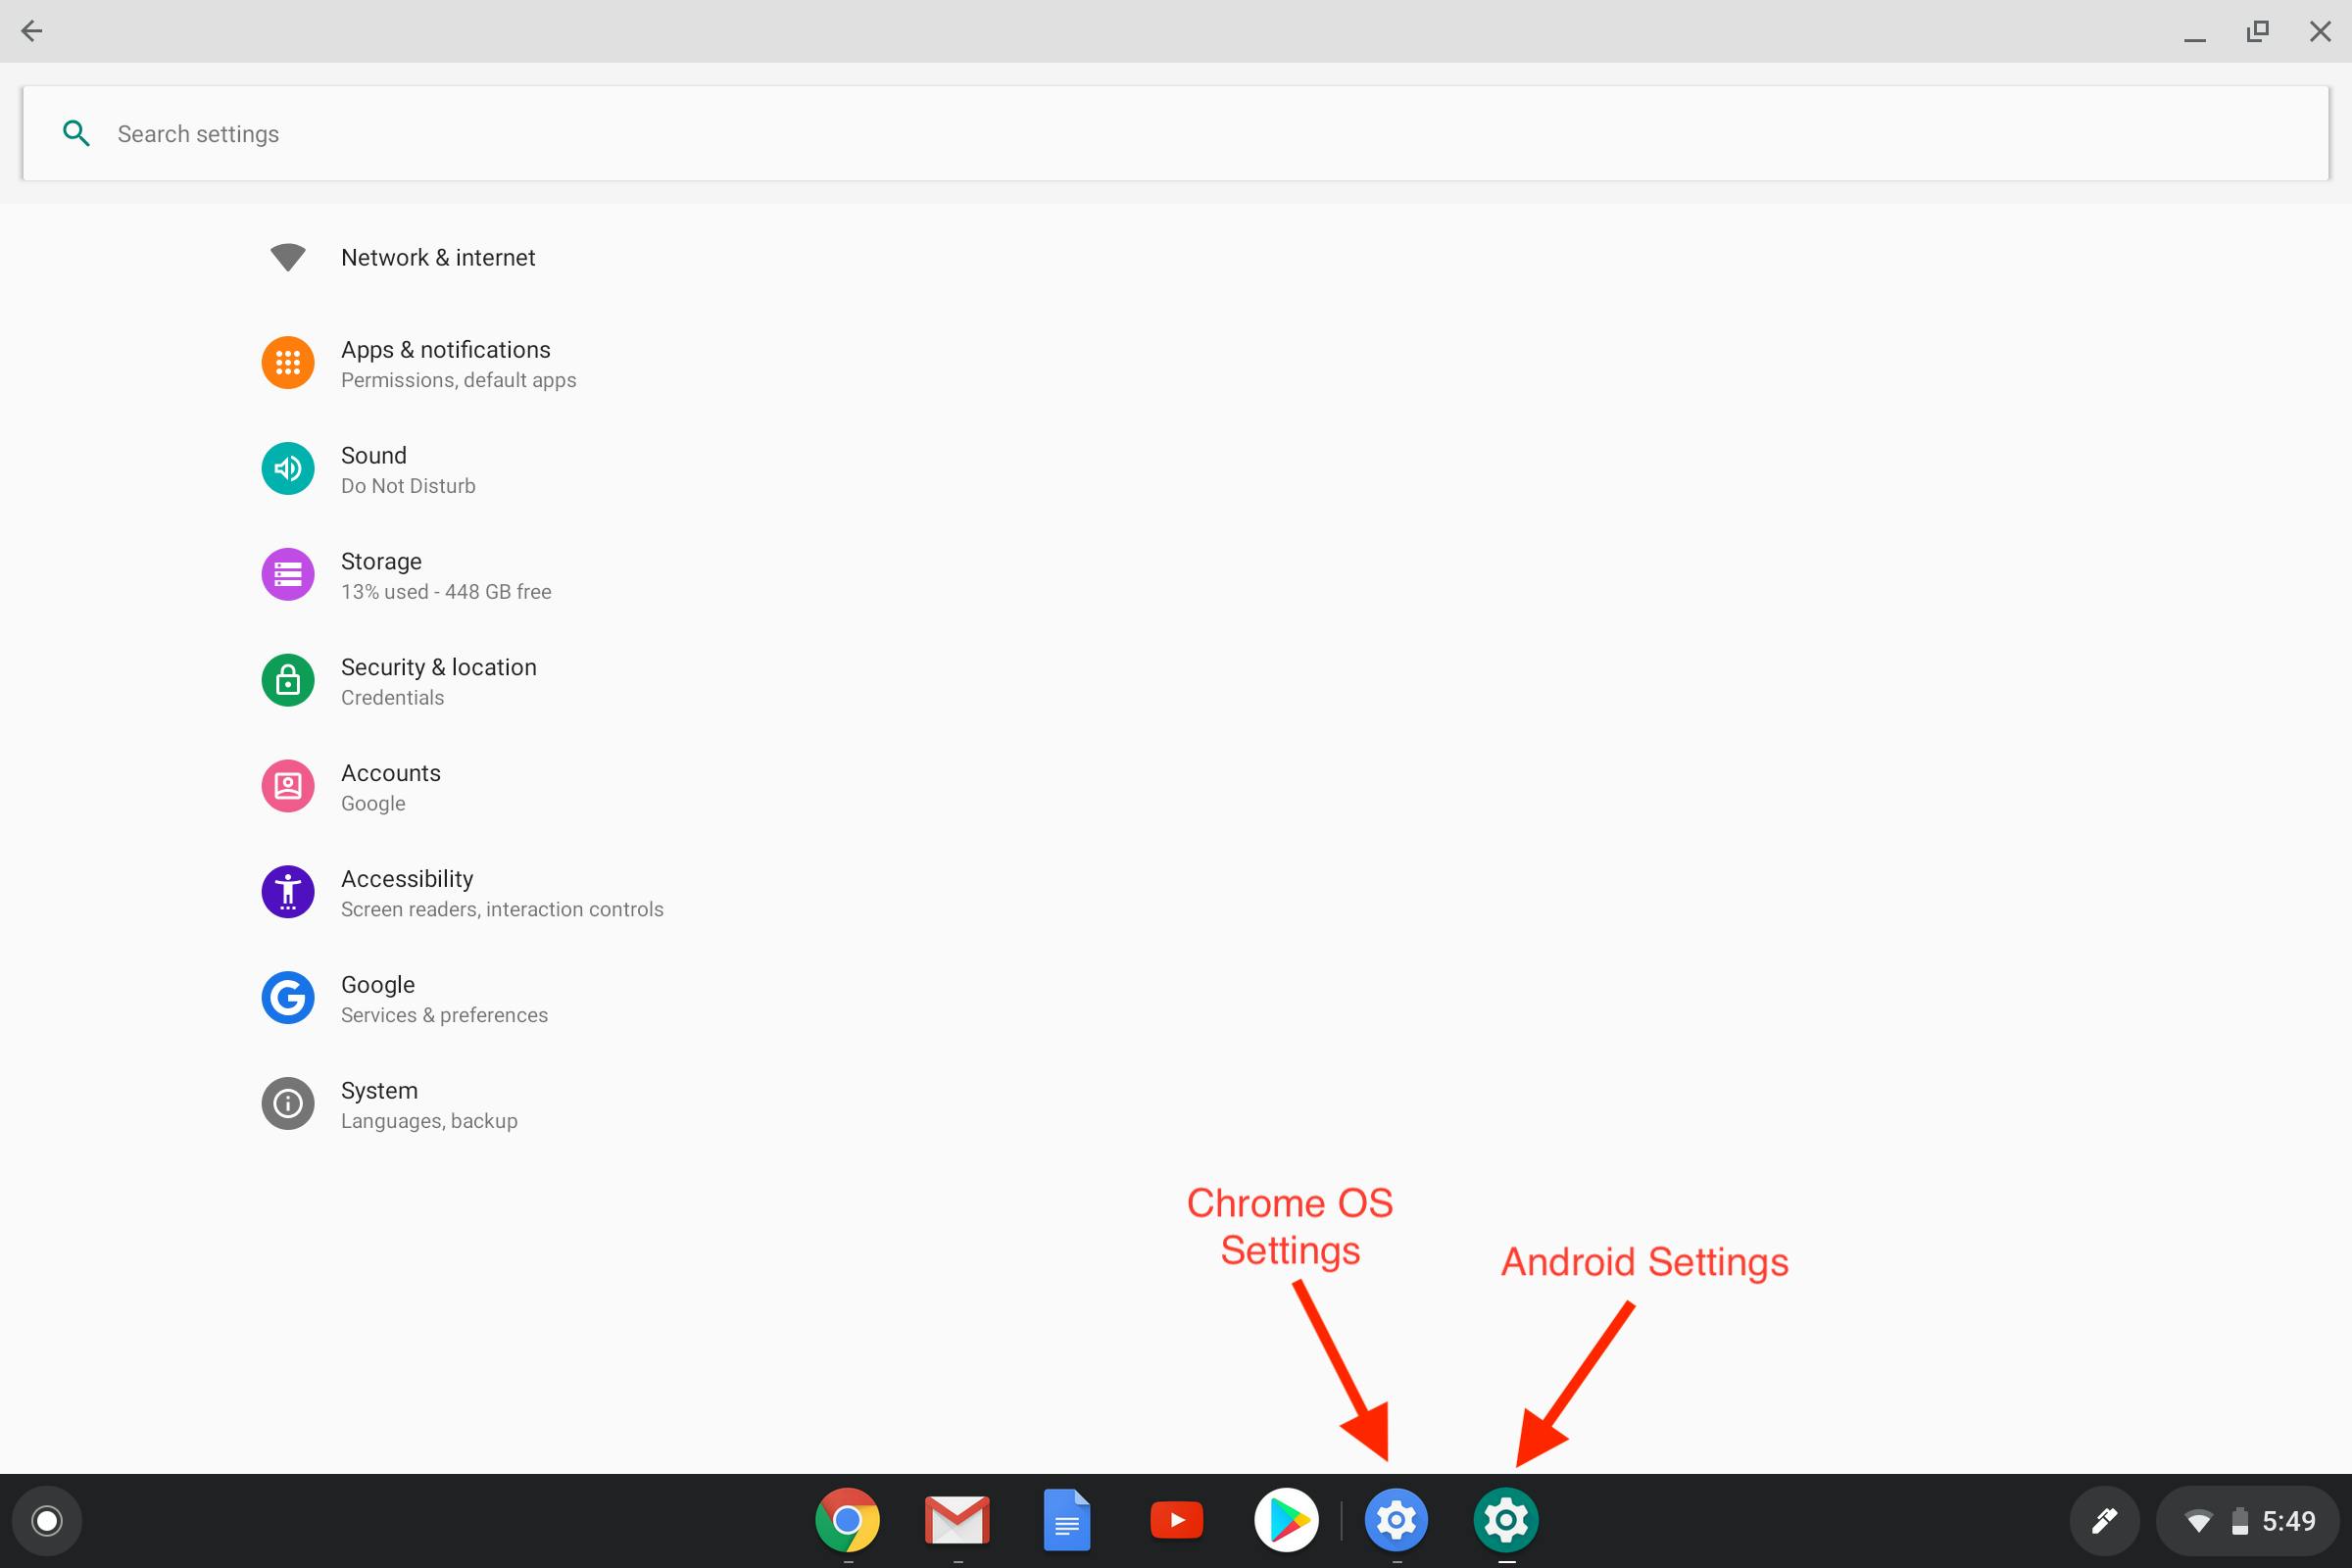 Los íconos de configuración de ChromeOS y Android se ven muy similares, pero para la configuración de Android, el ícono es un poco más grande y el color de fondo es verde.